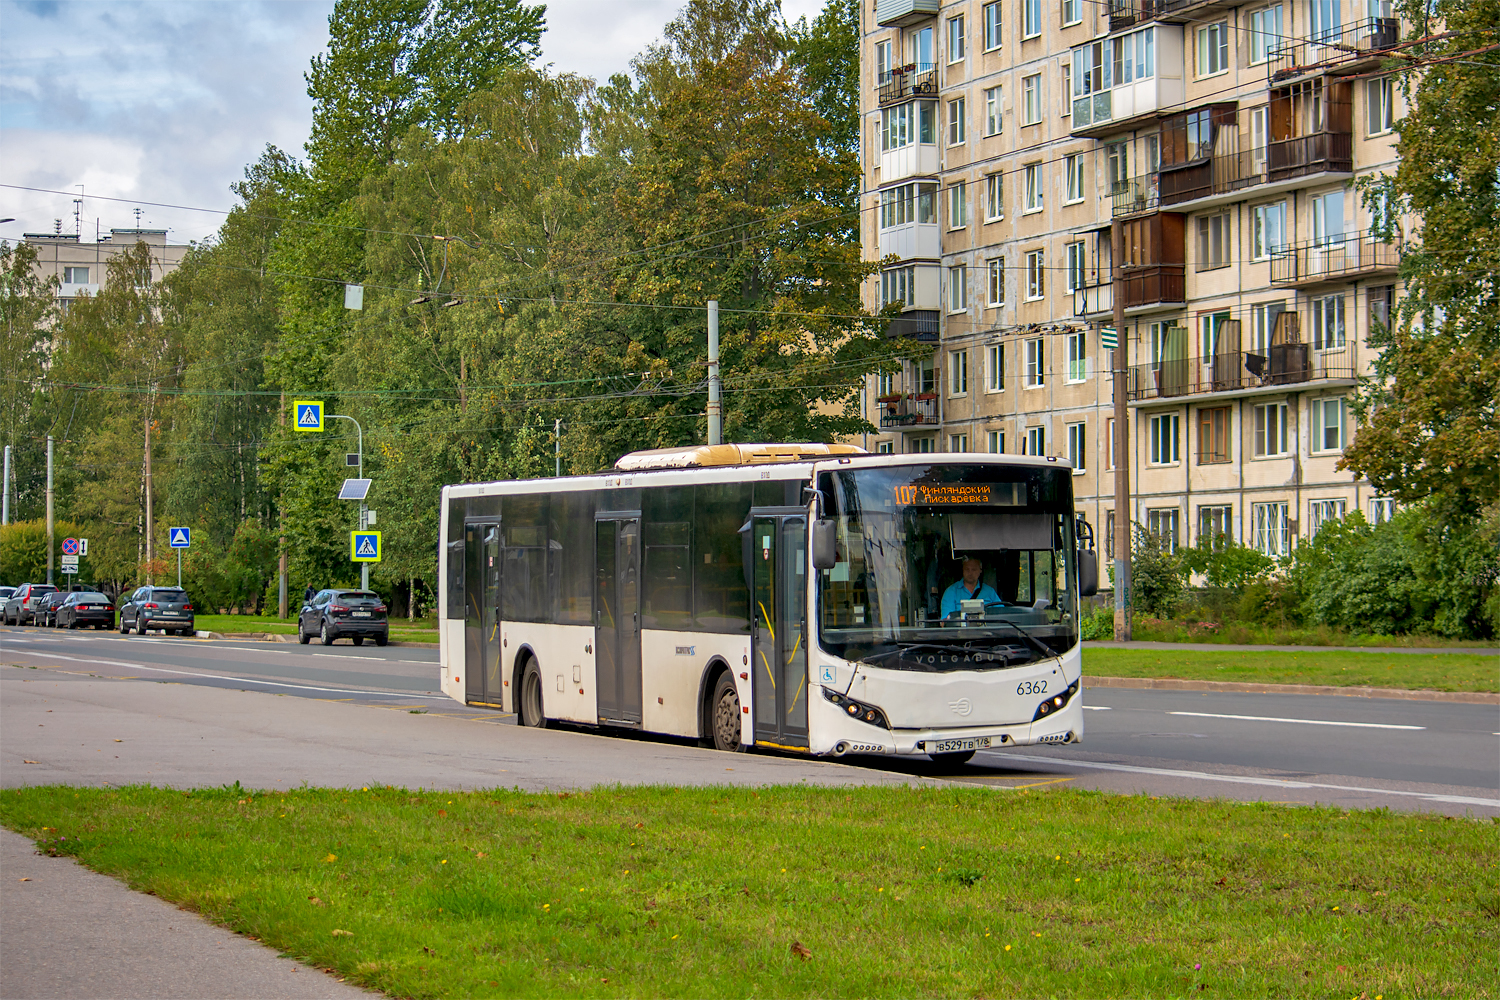 Saint Petersburg, Volgabus-5270.05 №: 6362